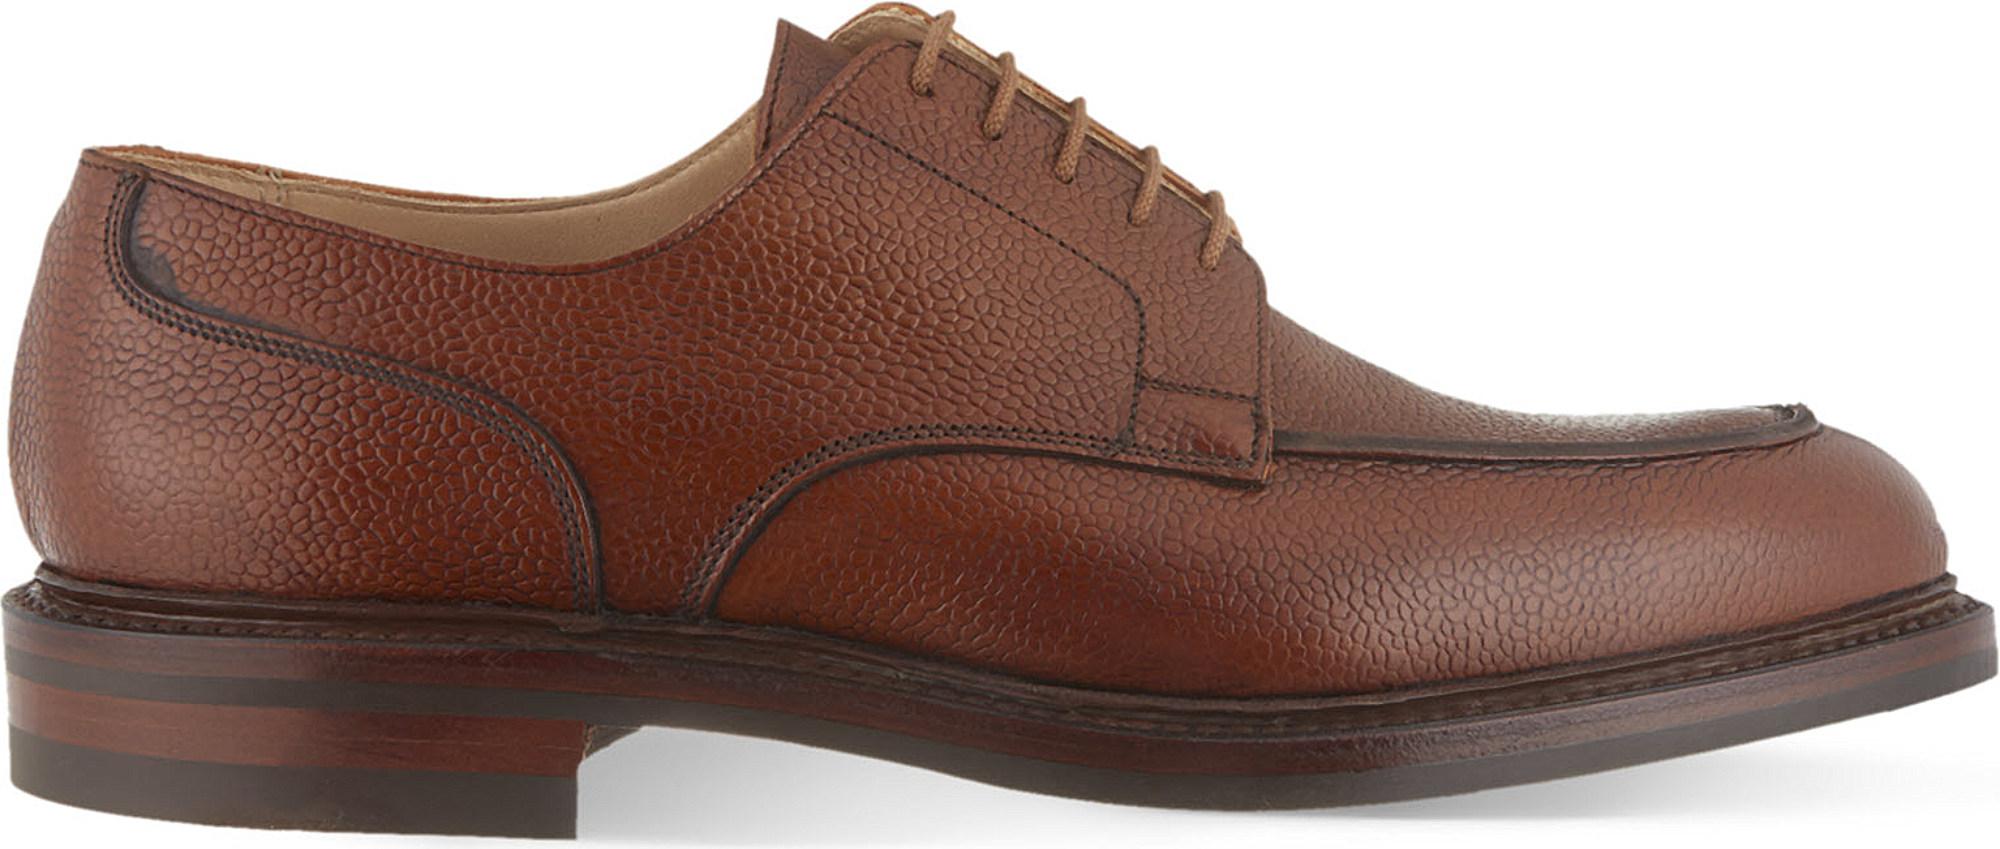 Crockett & Jones Leather Durham Split Toe Derby Shoes in Tan (Brown ...